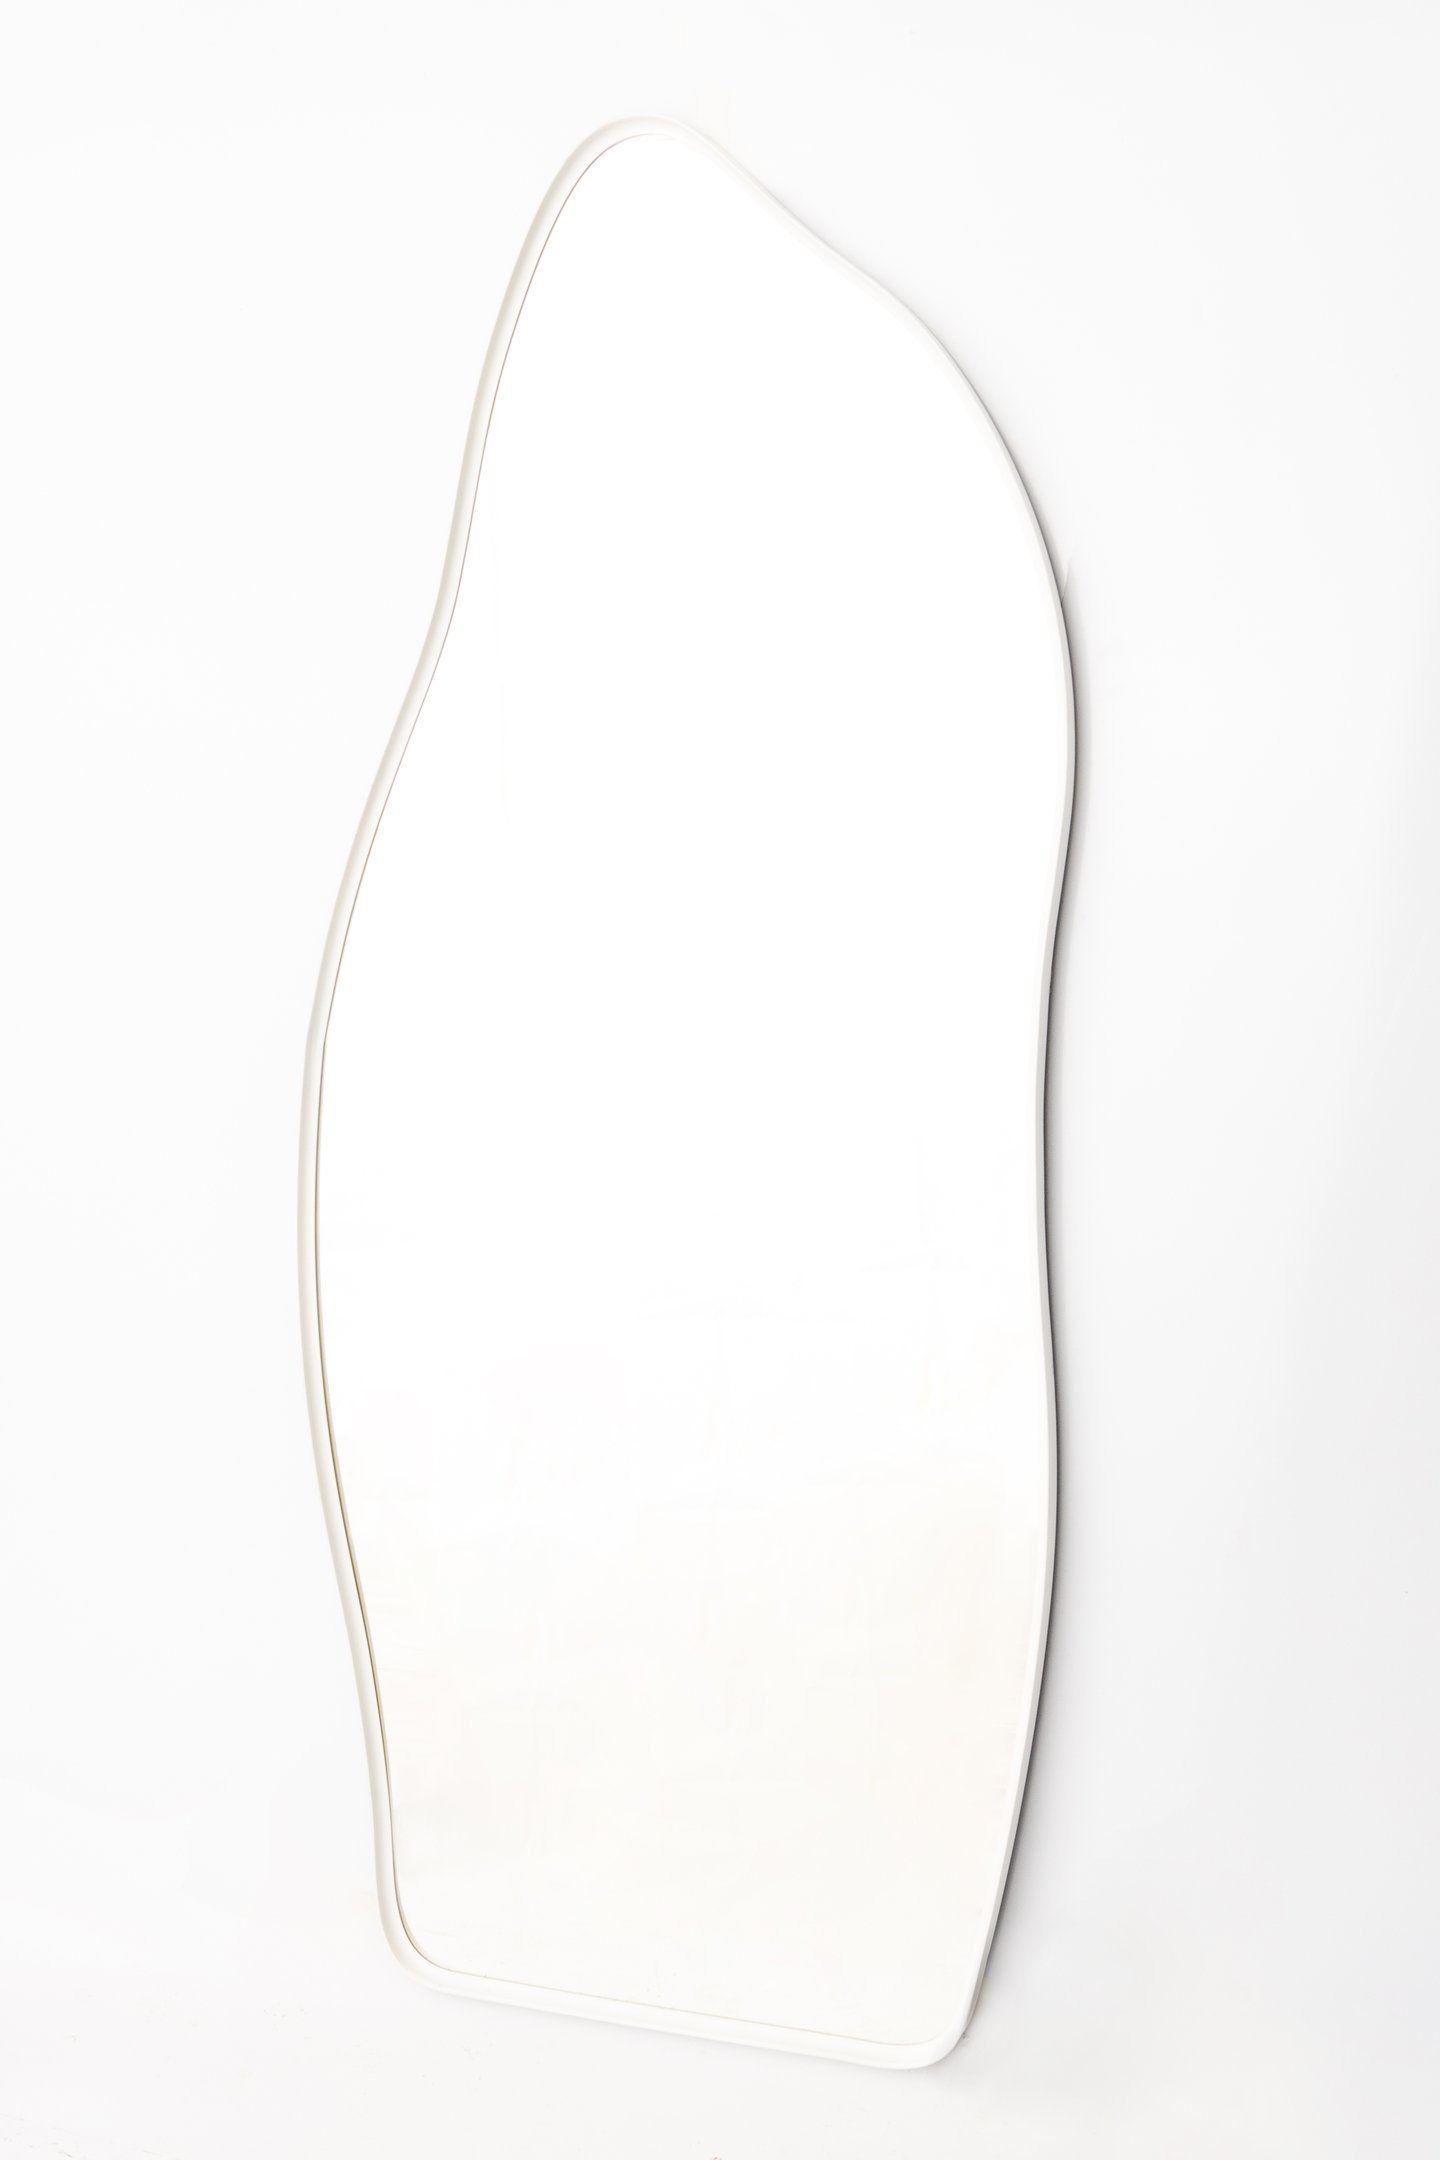 Espelho Grande Corpo Inteiro com Moldura Metal Orgânico Decorativo 170x70cm Luxo Branco - 2